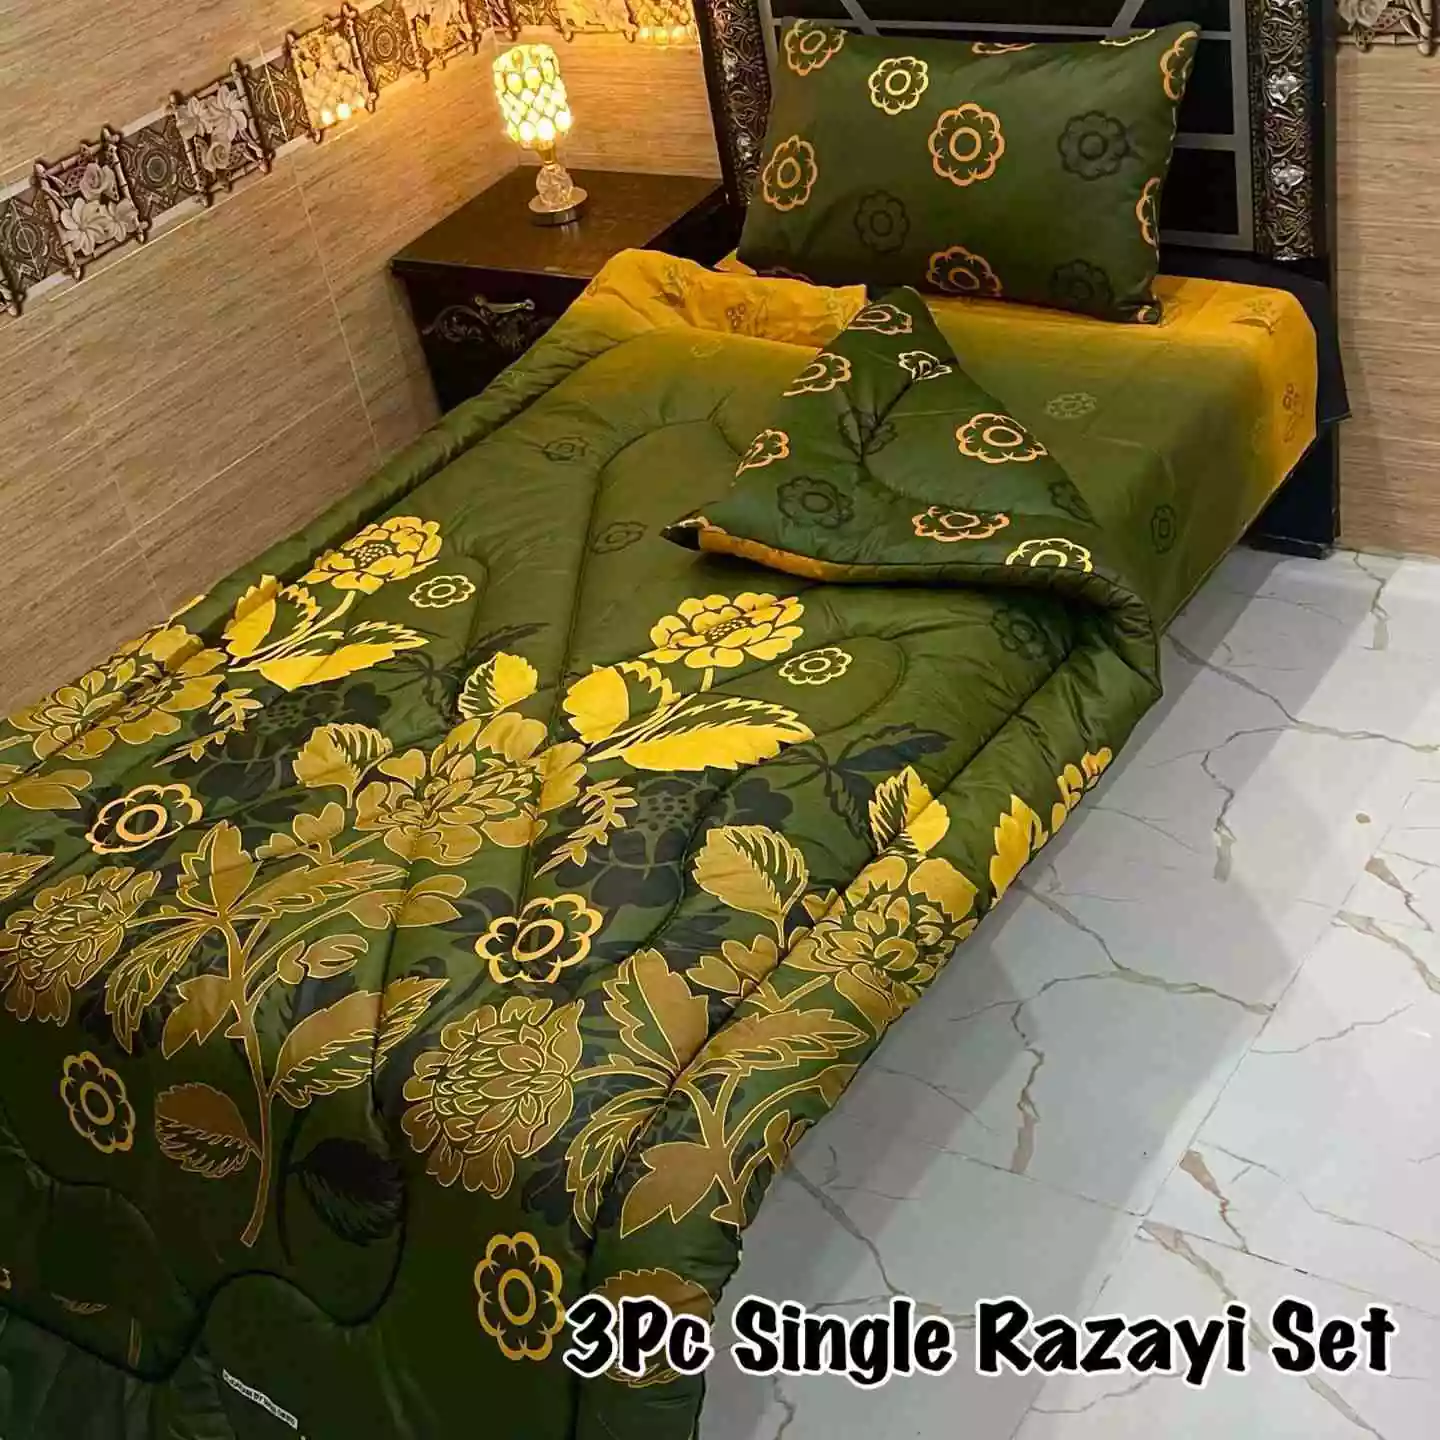 DF-VRSSB-7: DFY 3Pc Single Bed Vicky Razai Set